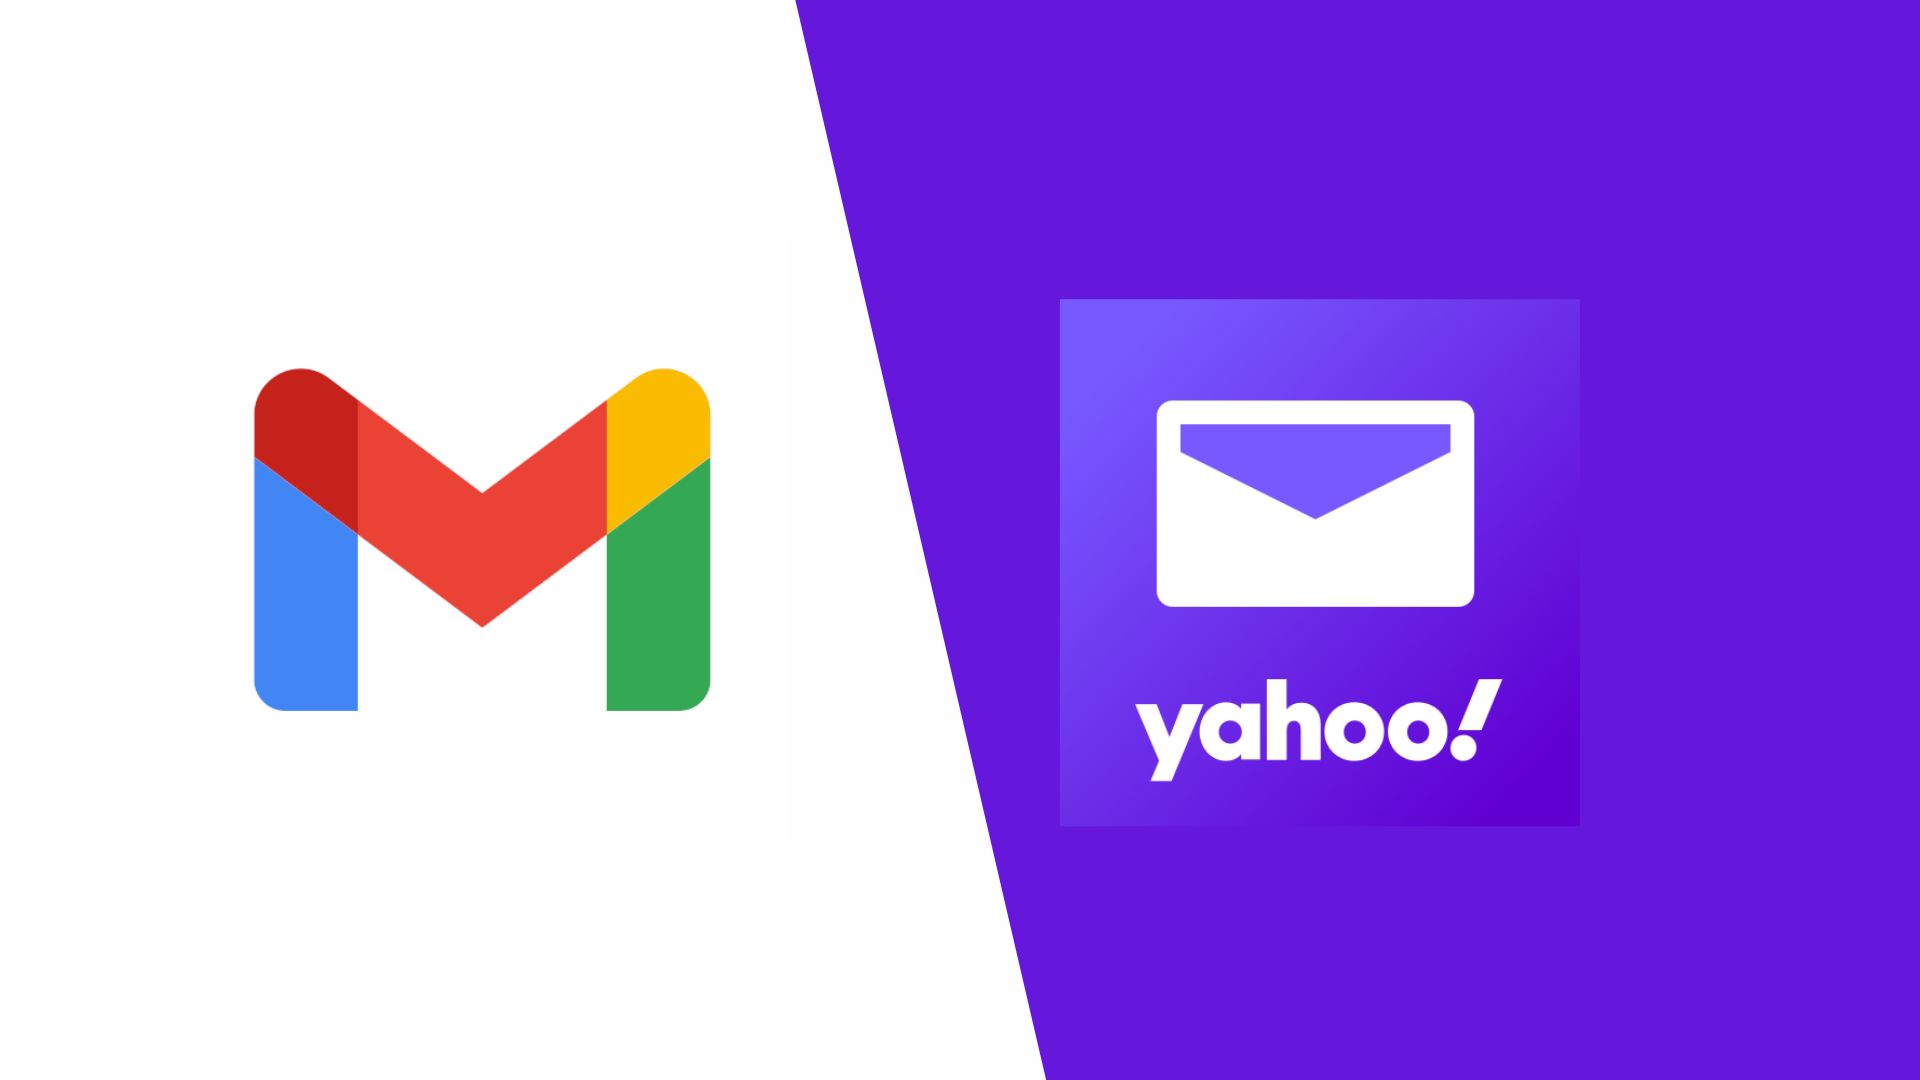 Beehiiv custom domain use for Yahoo, Gmail requirements compliance